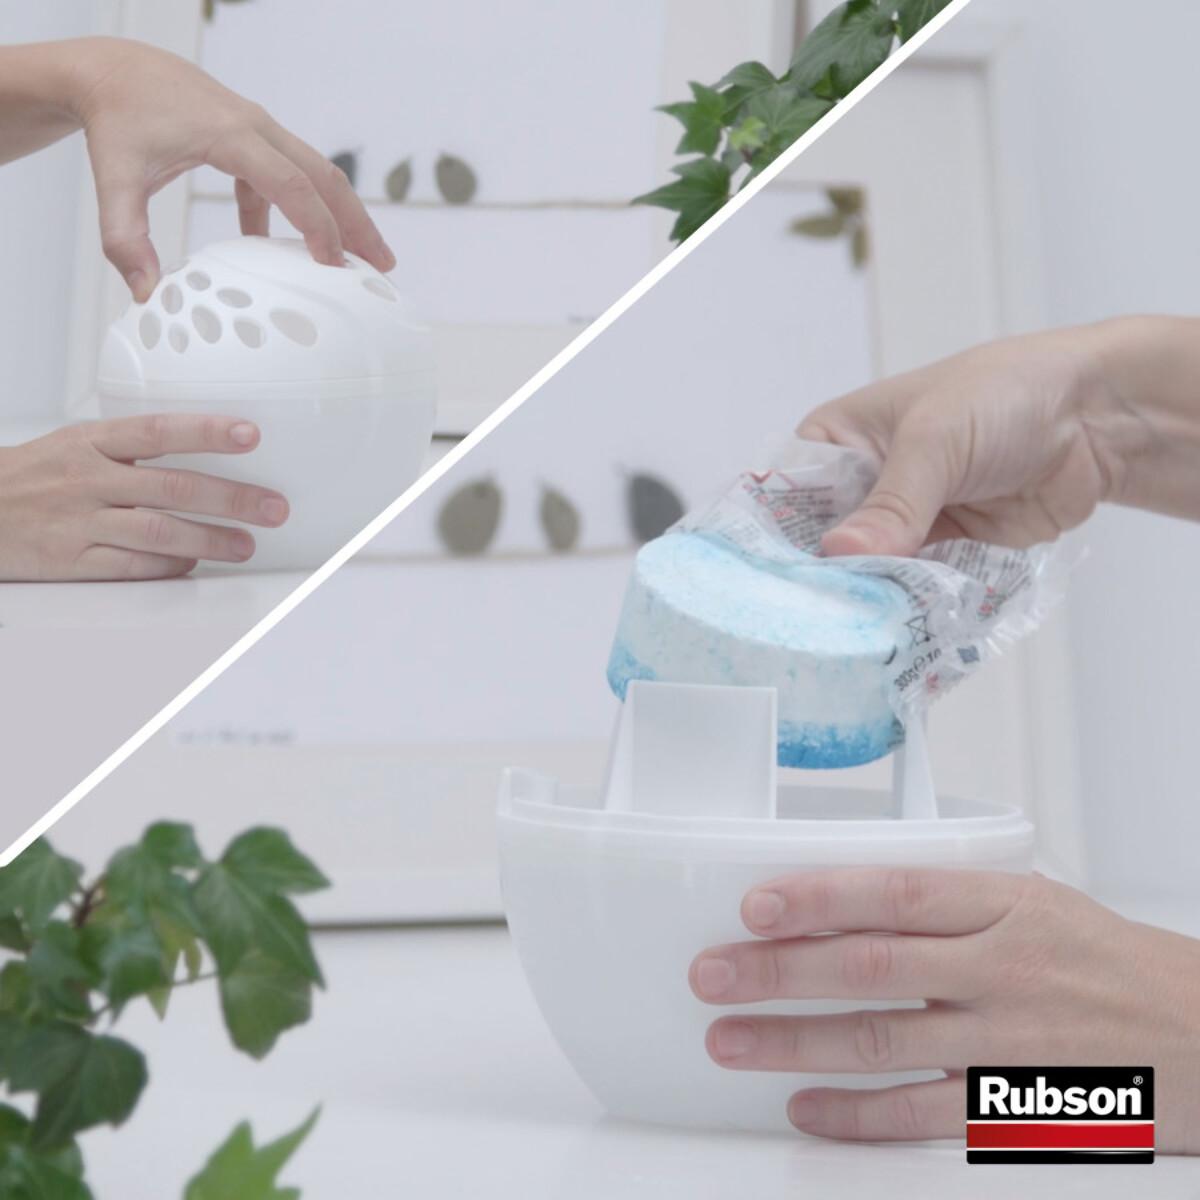 RUBSON - Absorbeur d'Humidité Sensation Pure (inclus 1 recharge) et 2 recharges universelles pour absorbeur d'humidité.